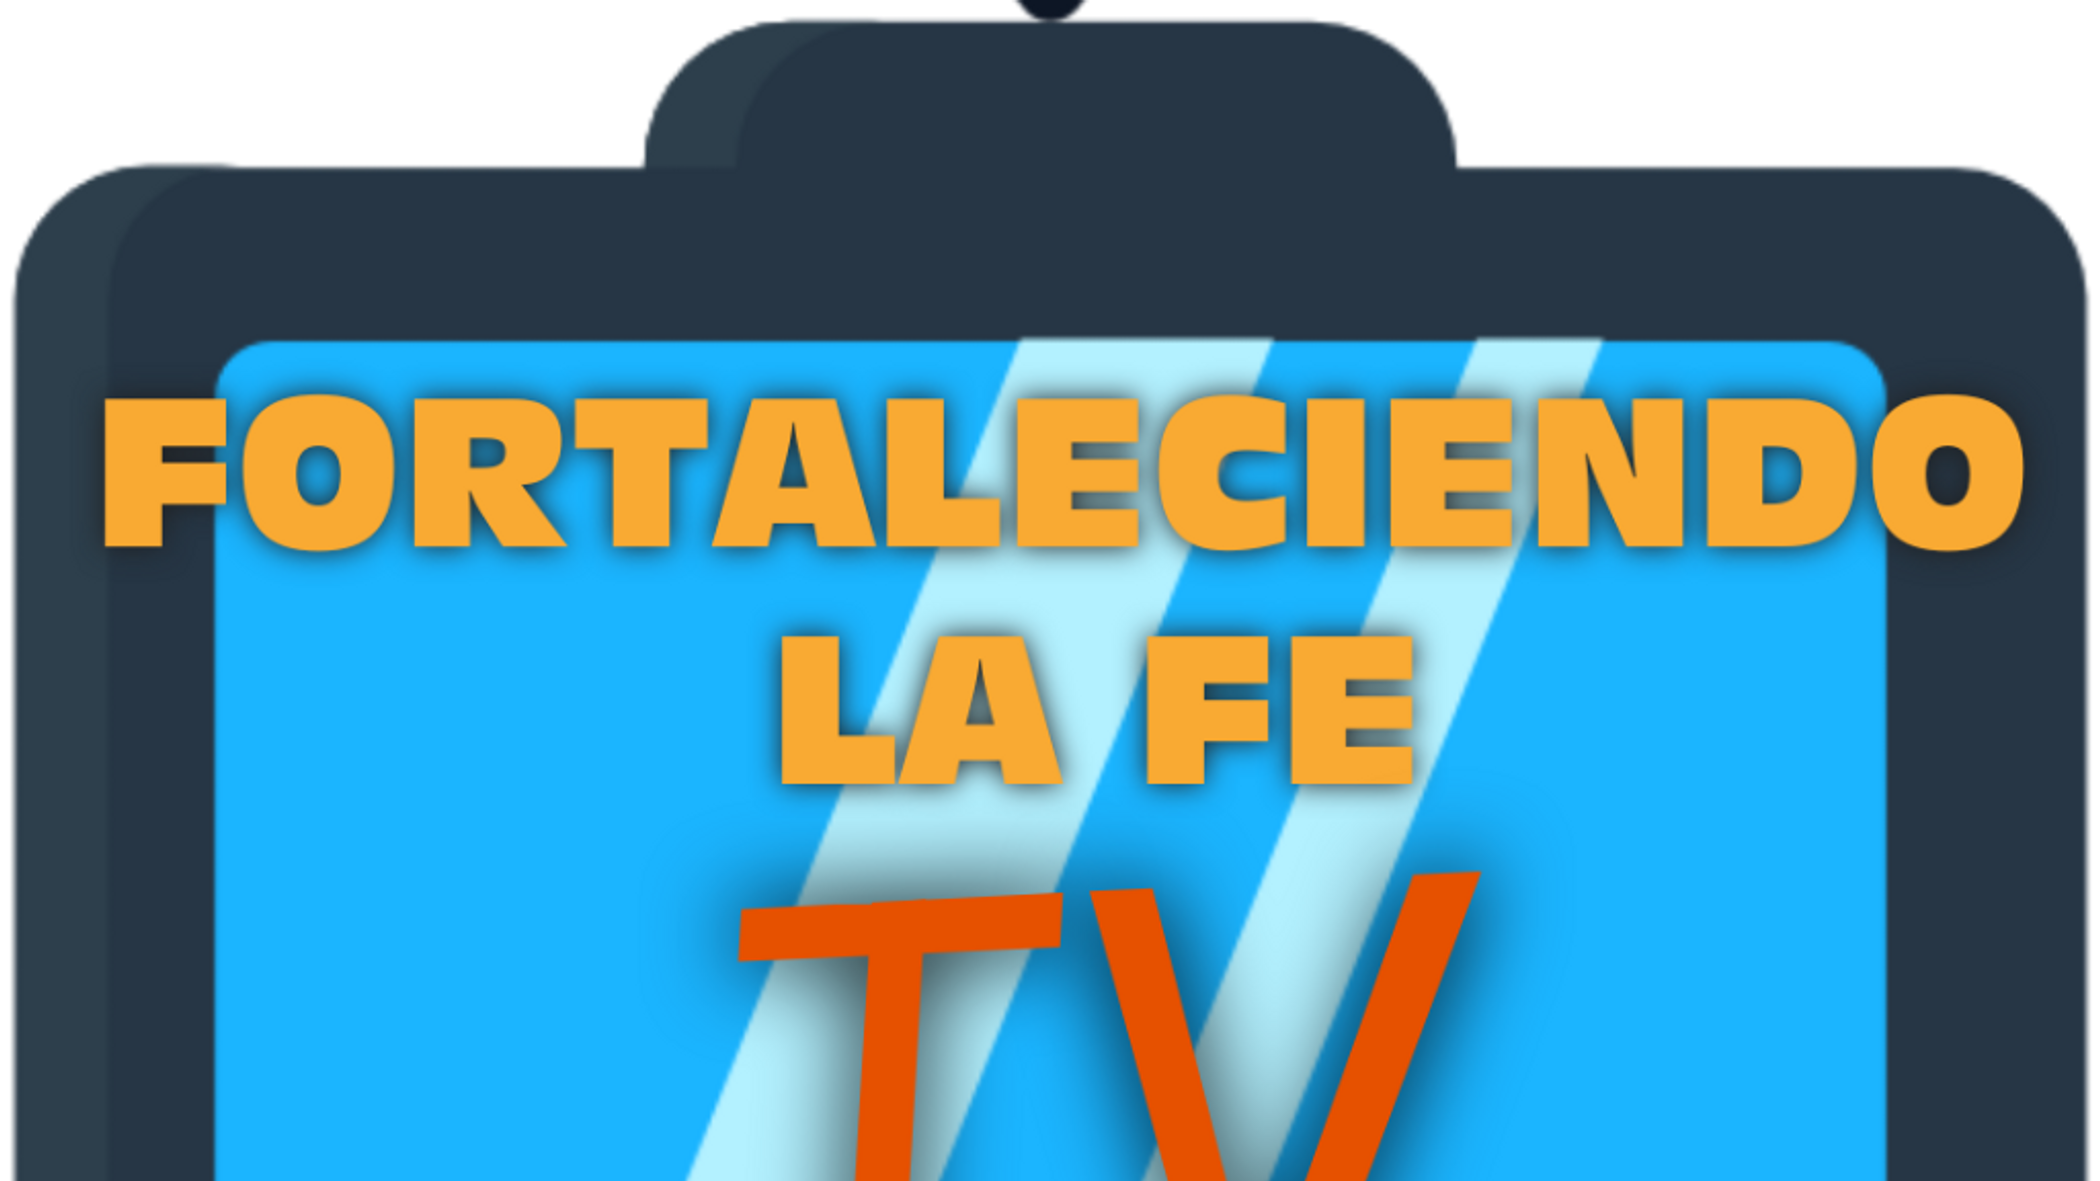 FORTALECIENDO LA FE TV LIVE